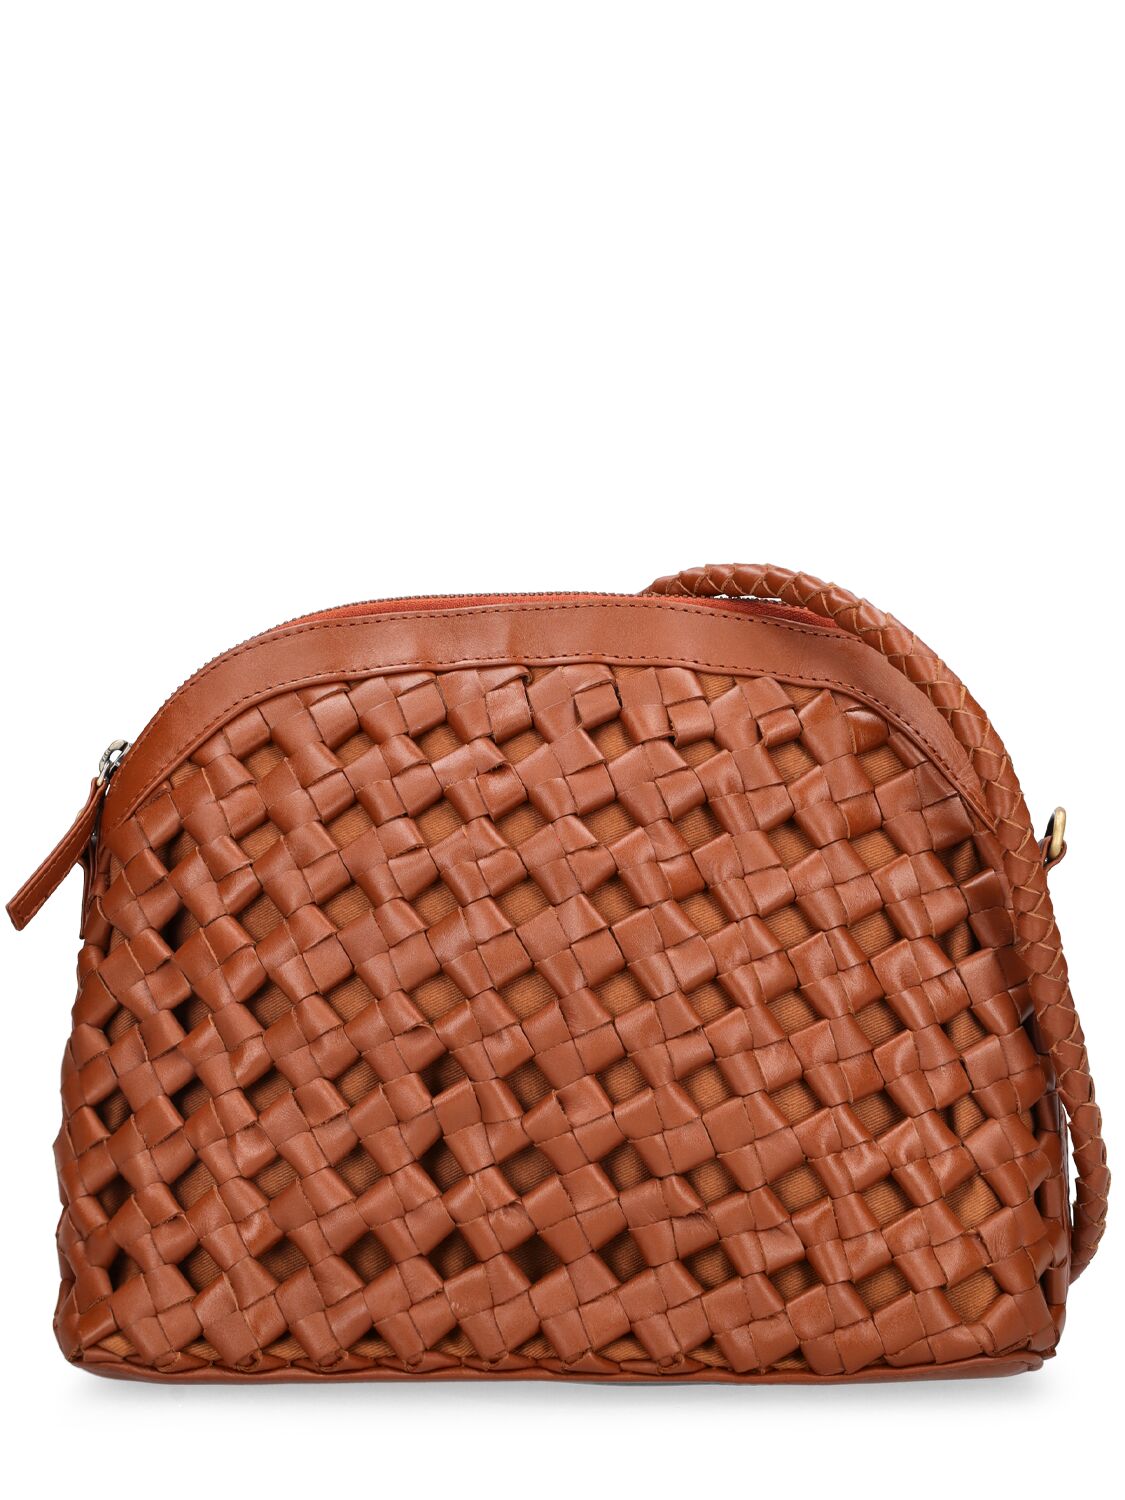 Carmen Woven Leather Shoulder Bag